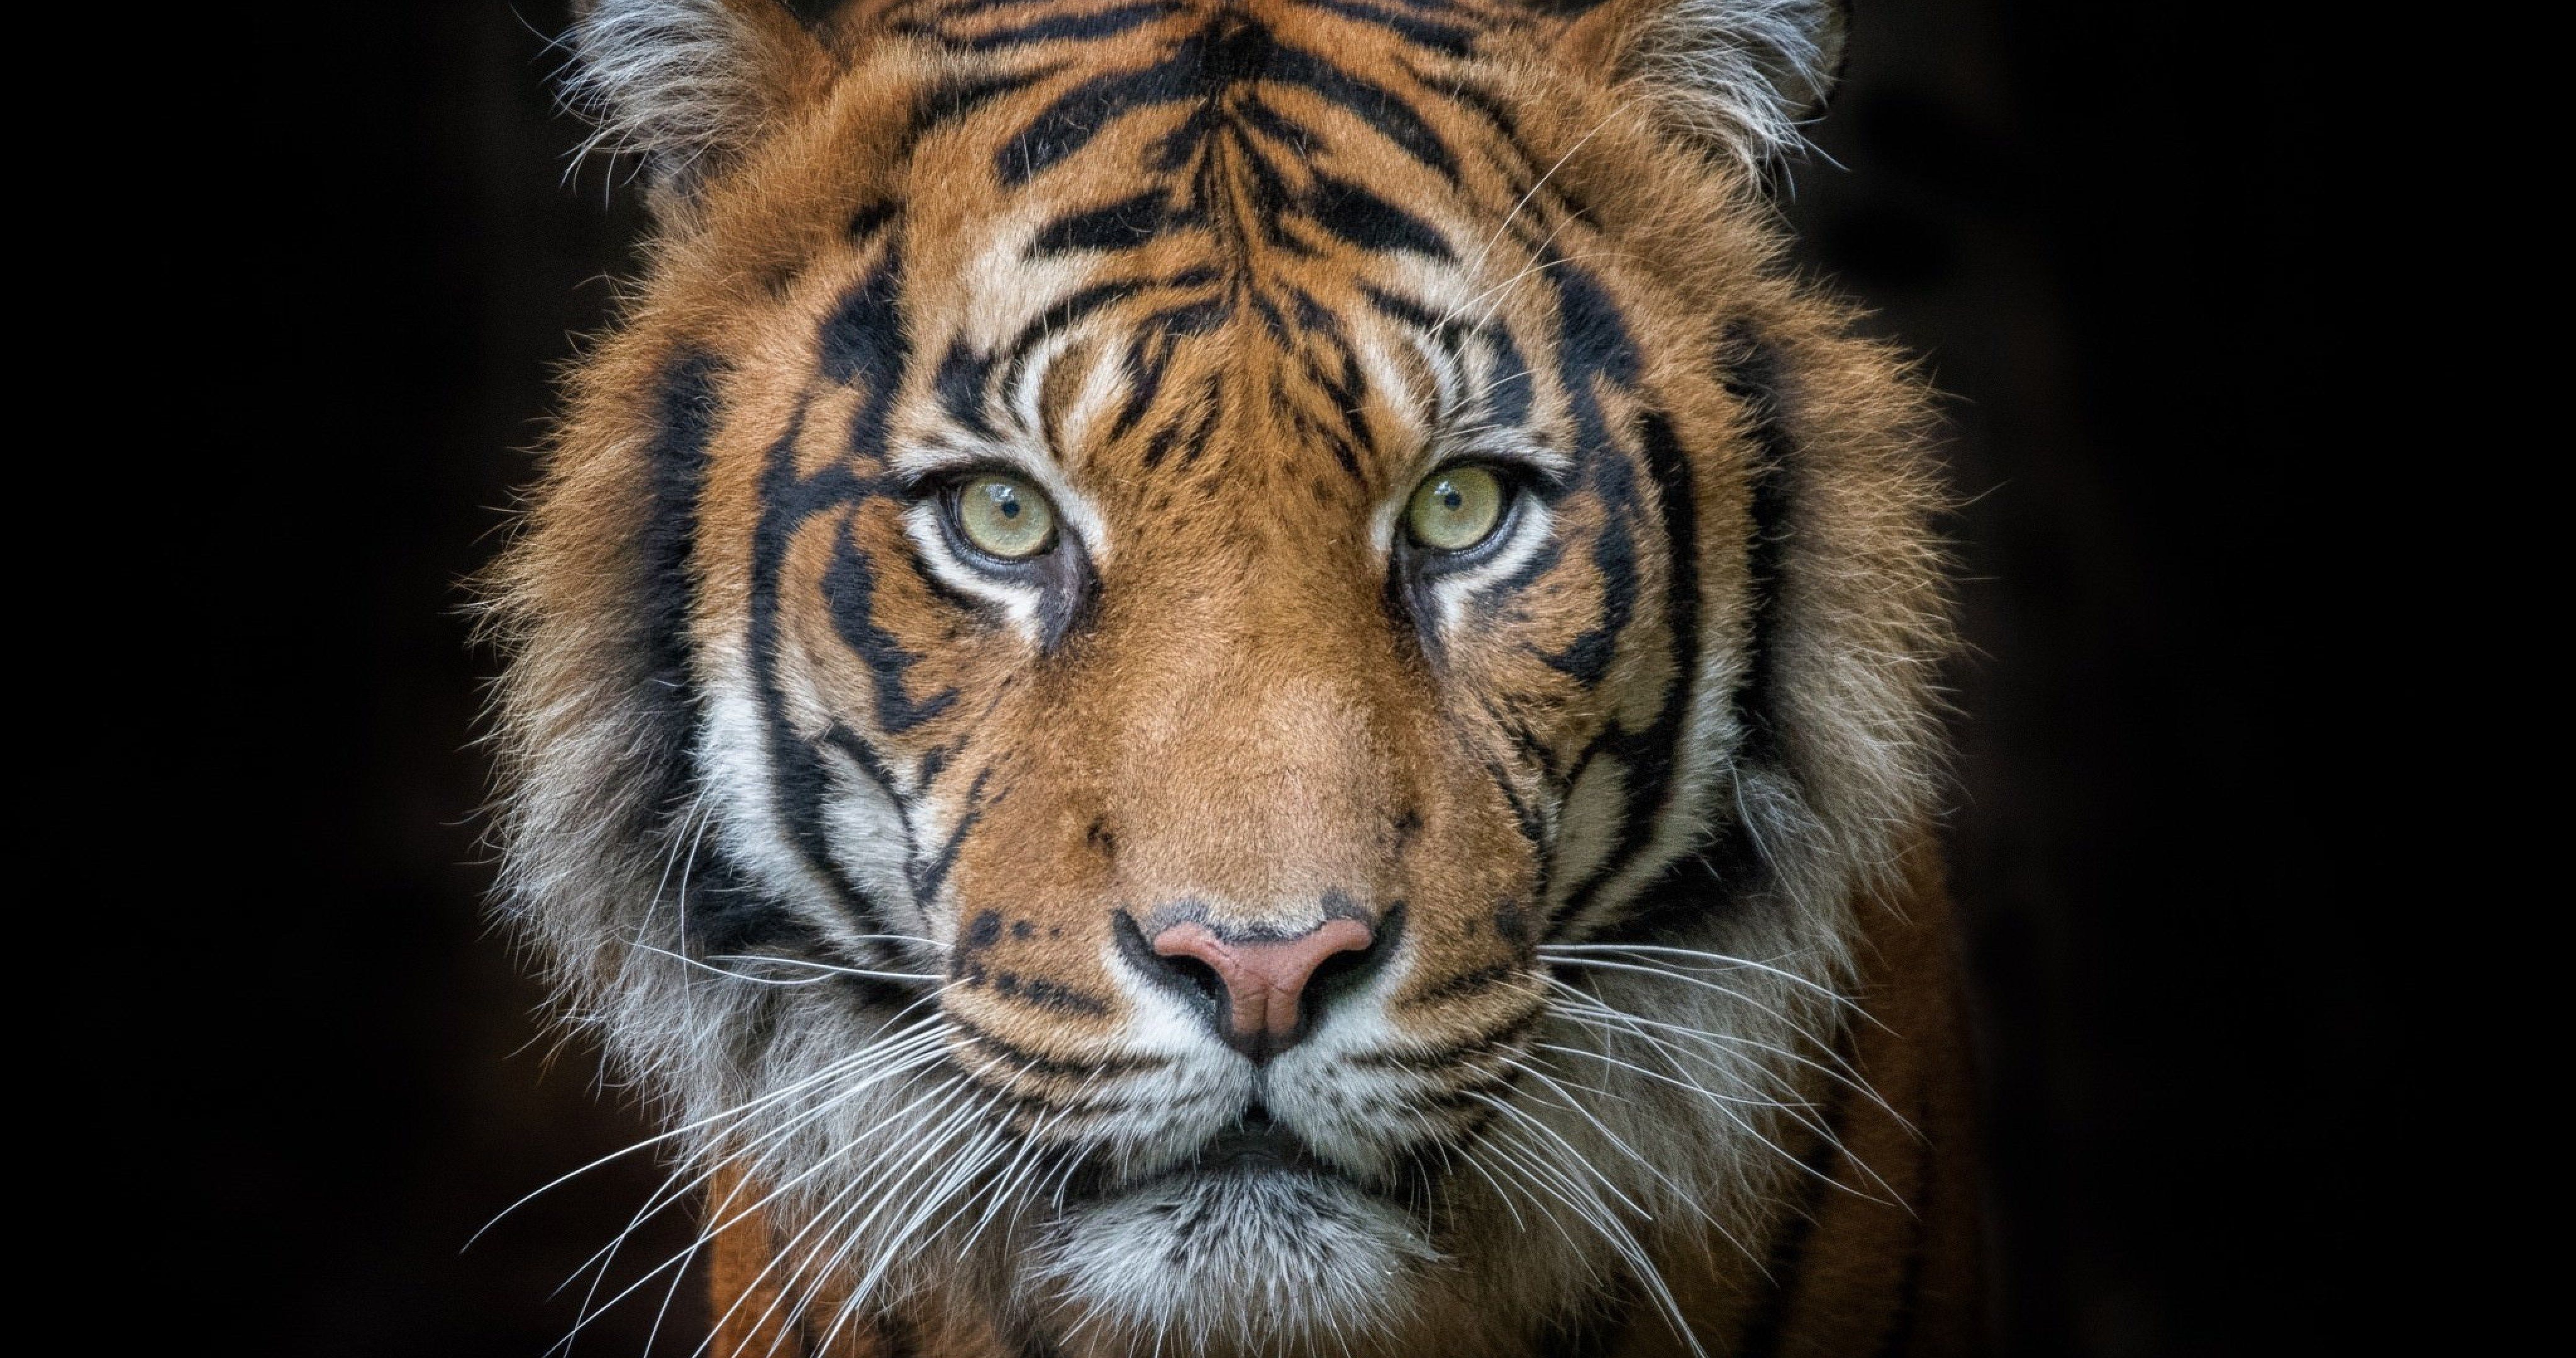 tiger portrait 4k ultra HD wallpaper. Pet tiger, Tiger